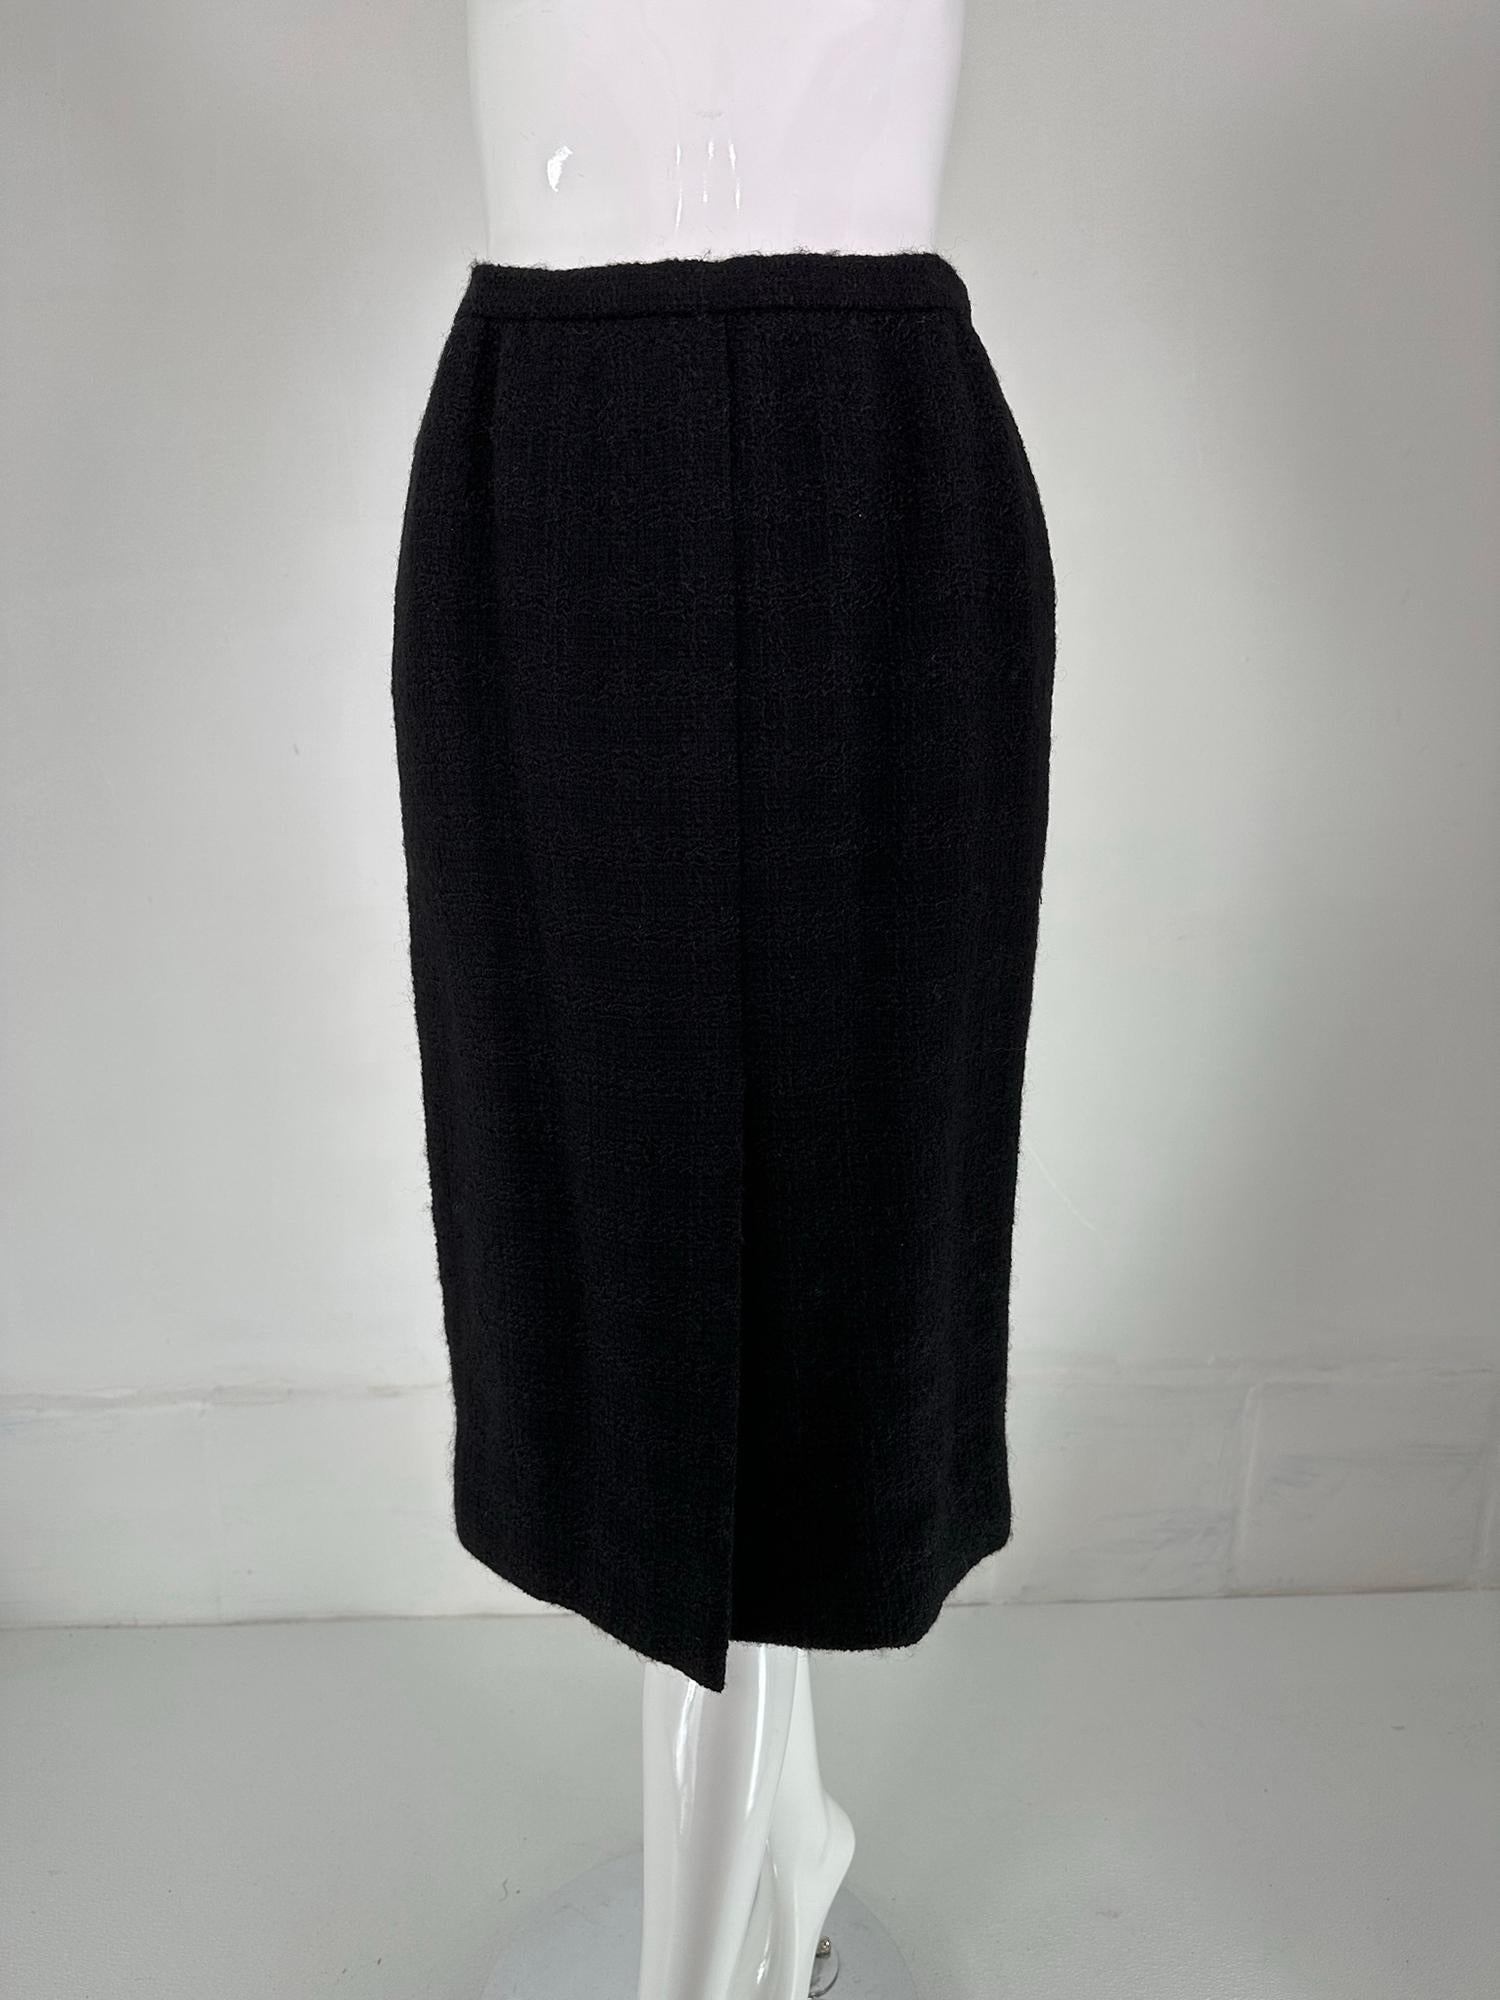 Chanel Creations-Paris Black Boucle Wool Suit 1971 For Sale 6